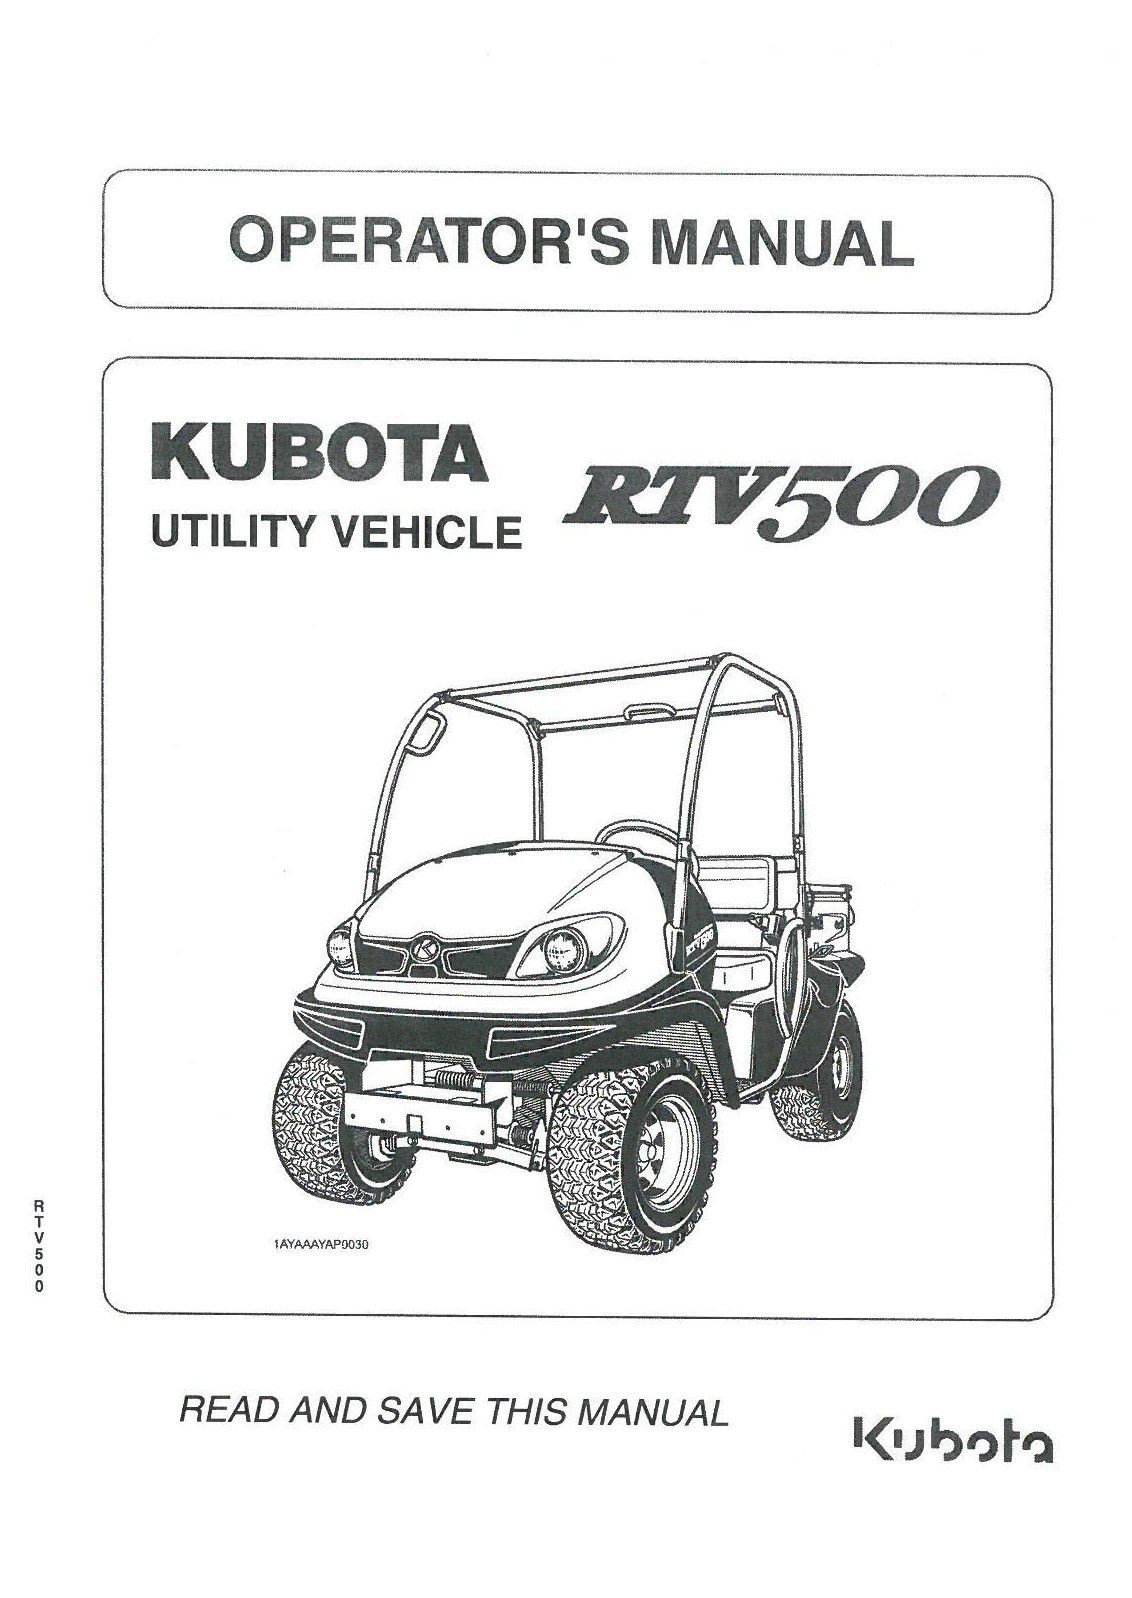 Kubota Rtv 500 Engine Diagram Kubota Utility Vehicle Rtv500 Operators Manual Rtv 500 Of Kubota Rtv 500 Engine Diagram